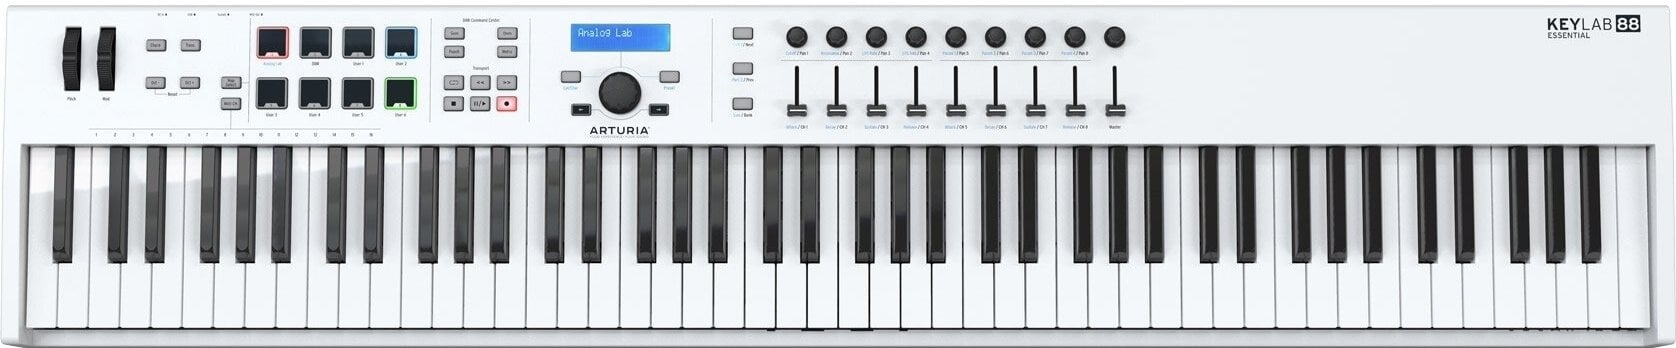 MIDI-Keyboard Arturia KeyLab Essential 88